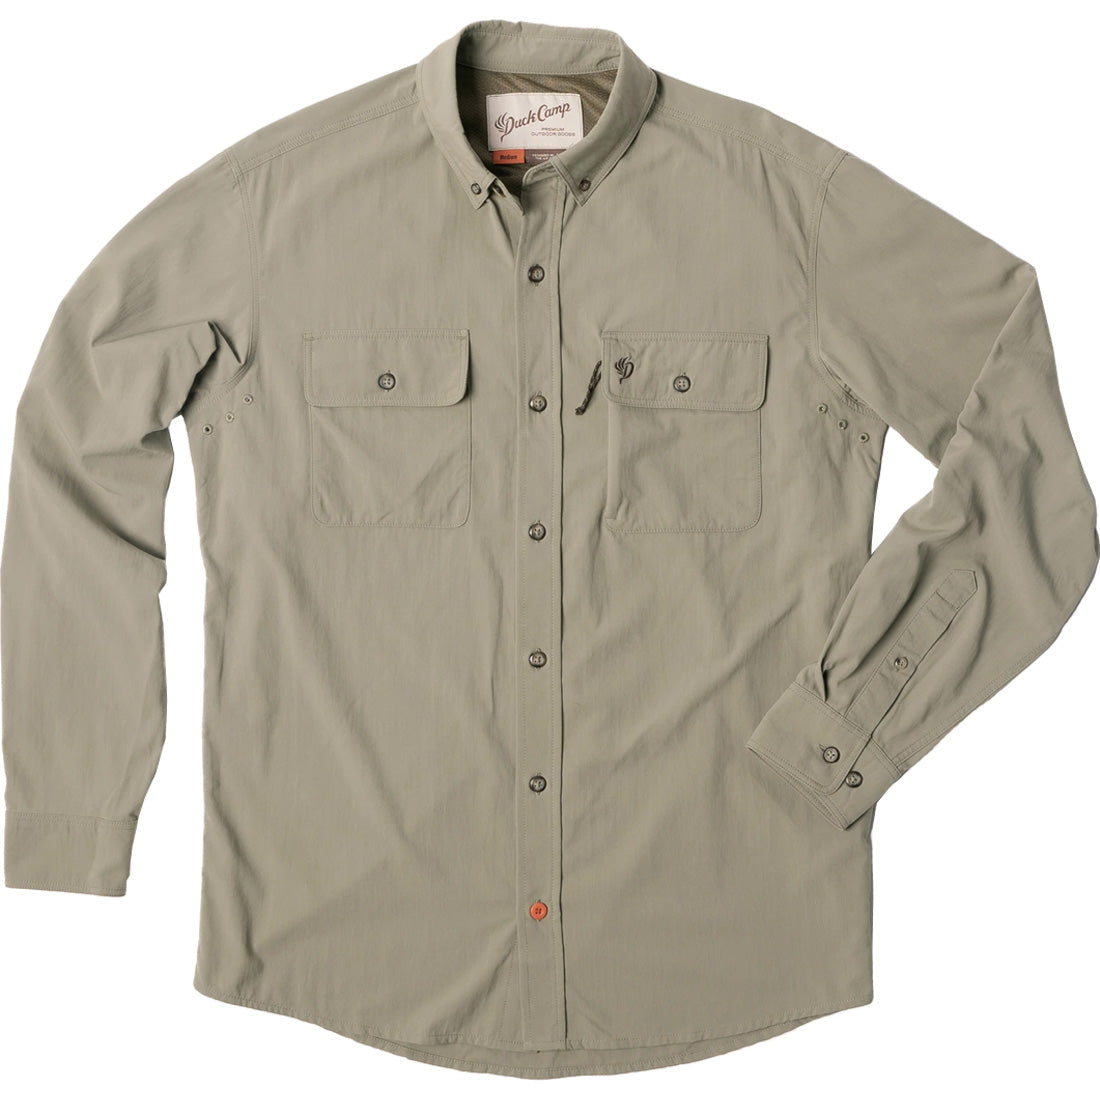 Duck Camp Lightweight Hunting Shirt Long Sleeve - Men's